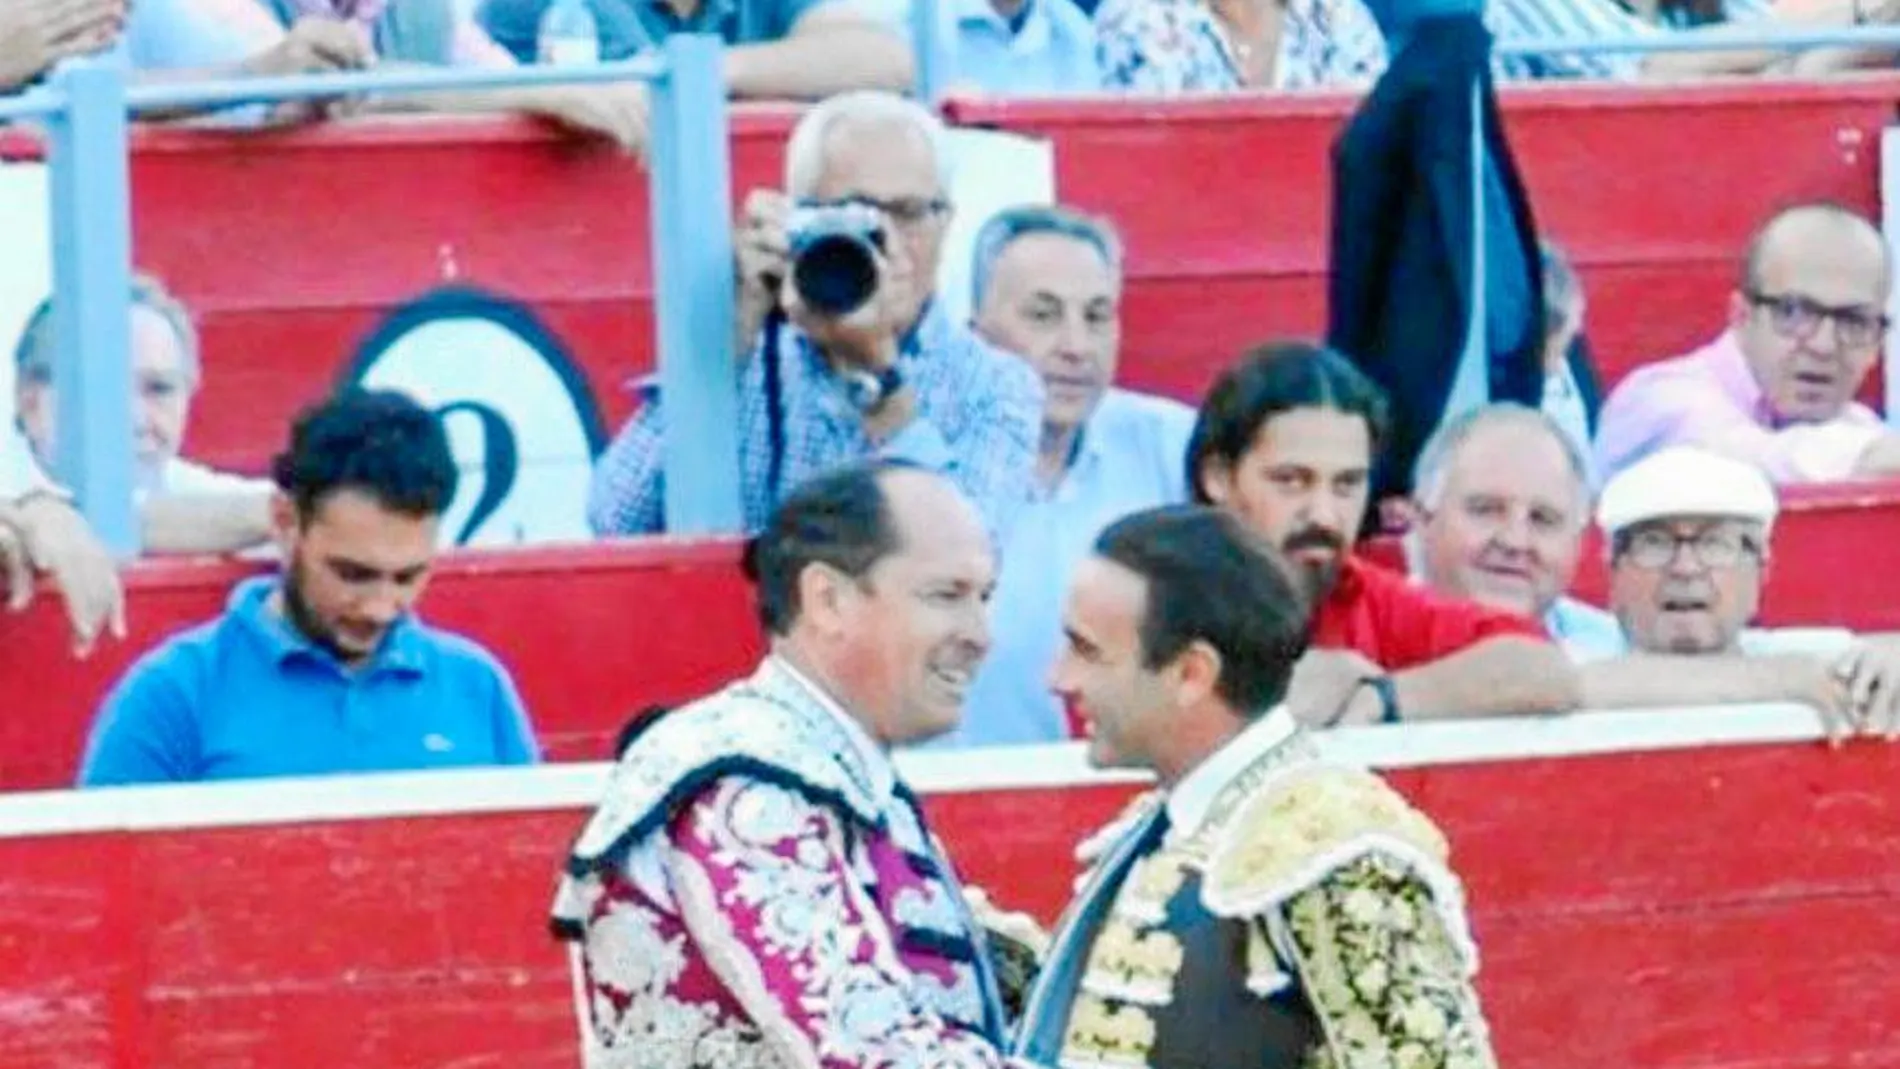 Imagen de Enrique Ponce brindándole un toro a su fiel banderillero y amigo Mariano de la Viña